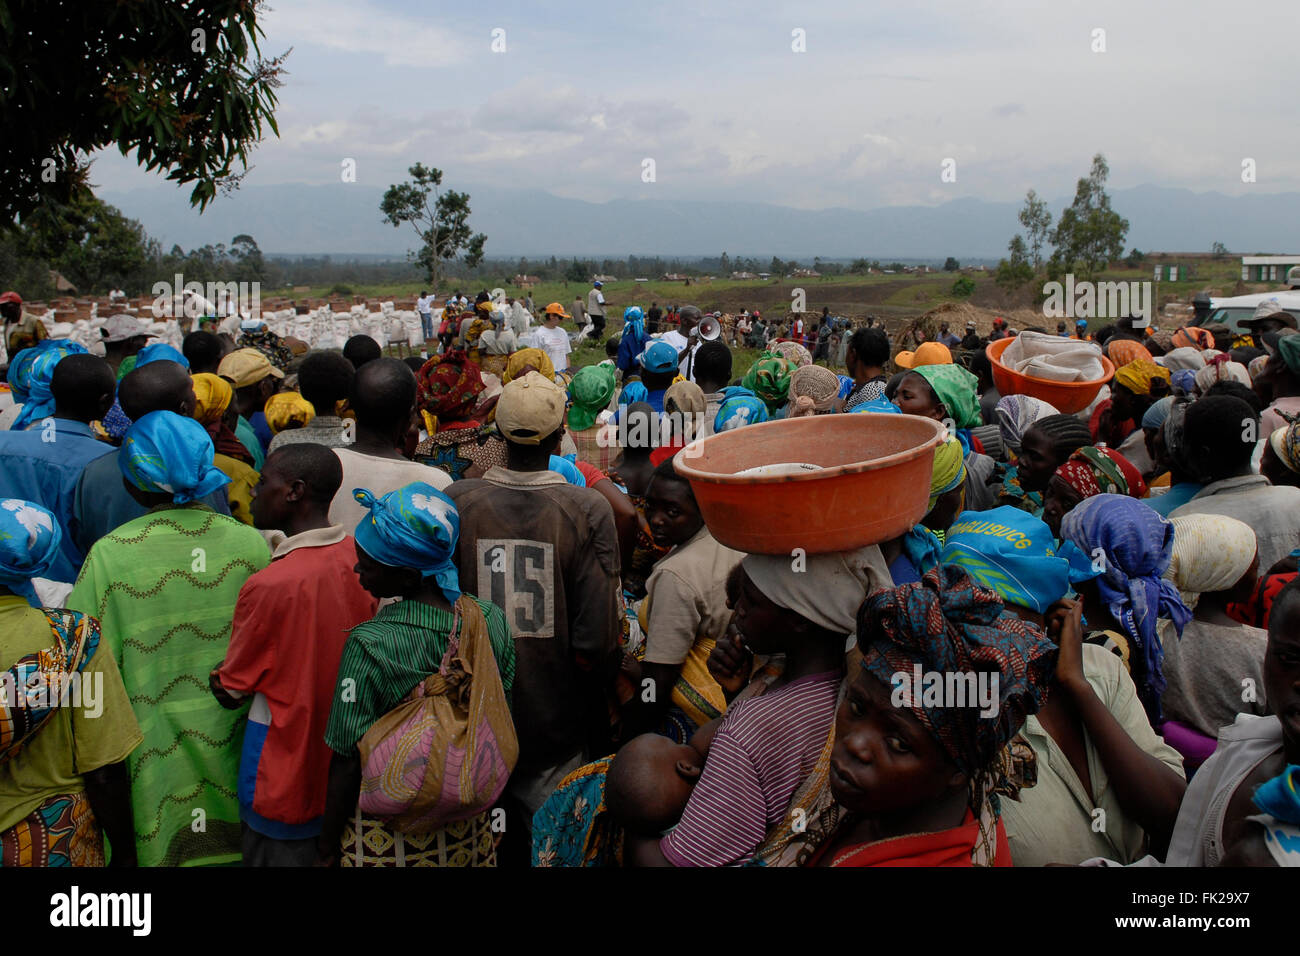 Les personnes déplacées à l'intérieur du pays attendent une distribution de nourriture effectuée par le PAM du Programme alimentaire mondial des Nations Unies dans la province du Nord-Kivu RD Congo Afrique Banque D'Images